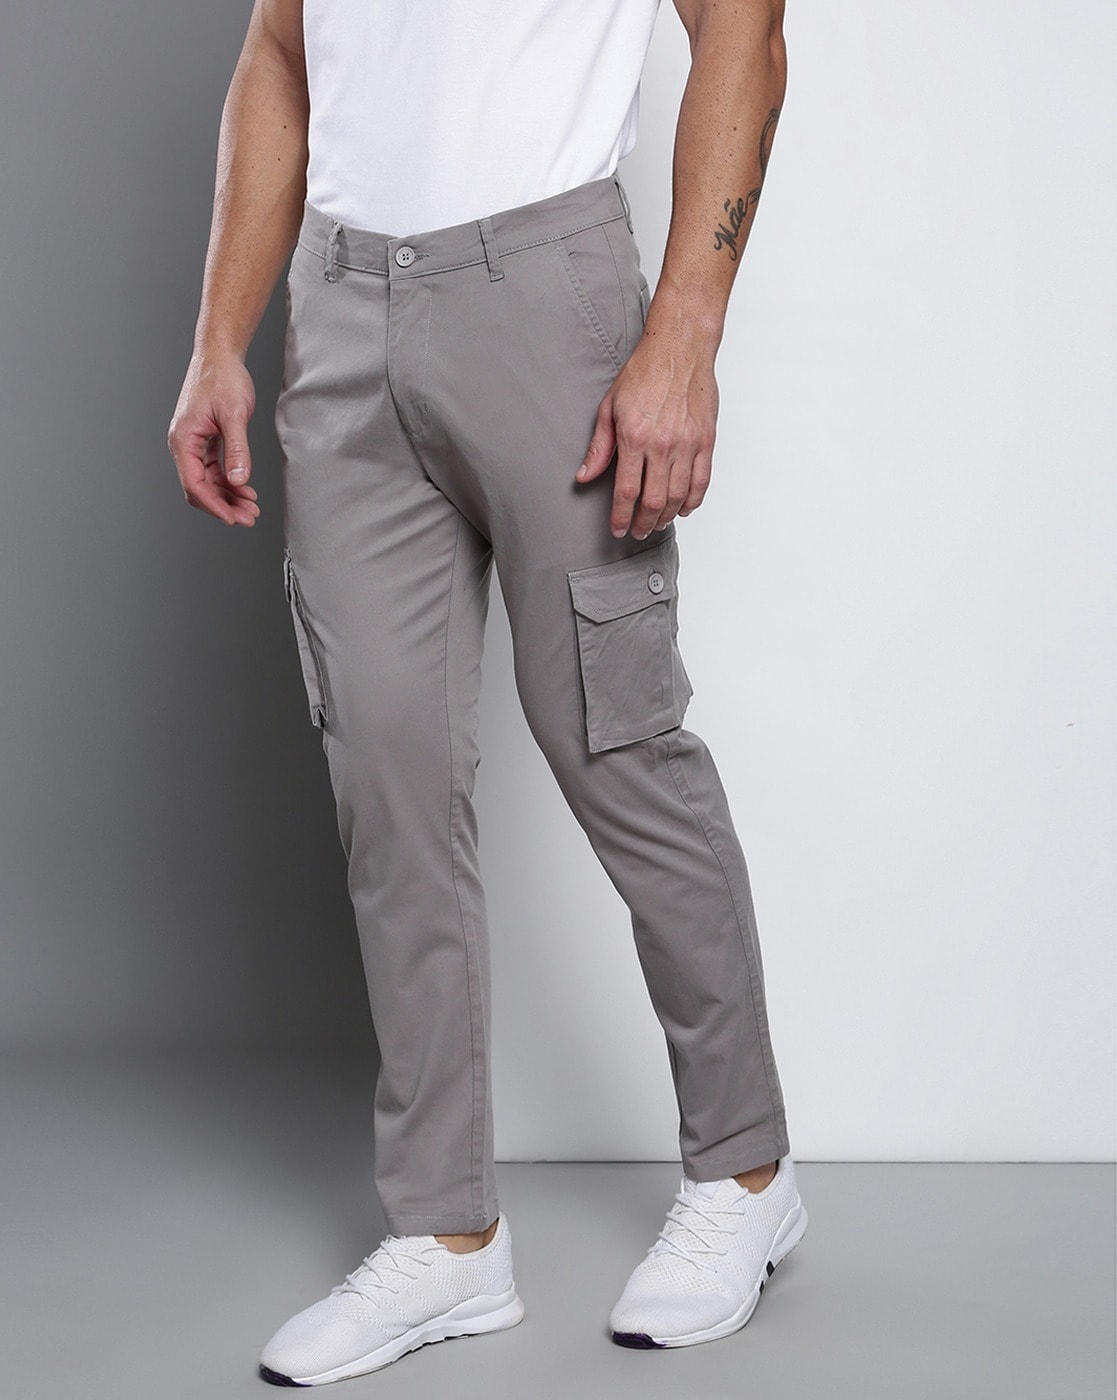 Men's Pants | Suit Pants & Slacks for Men | JCPenney